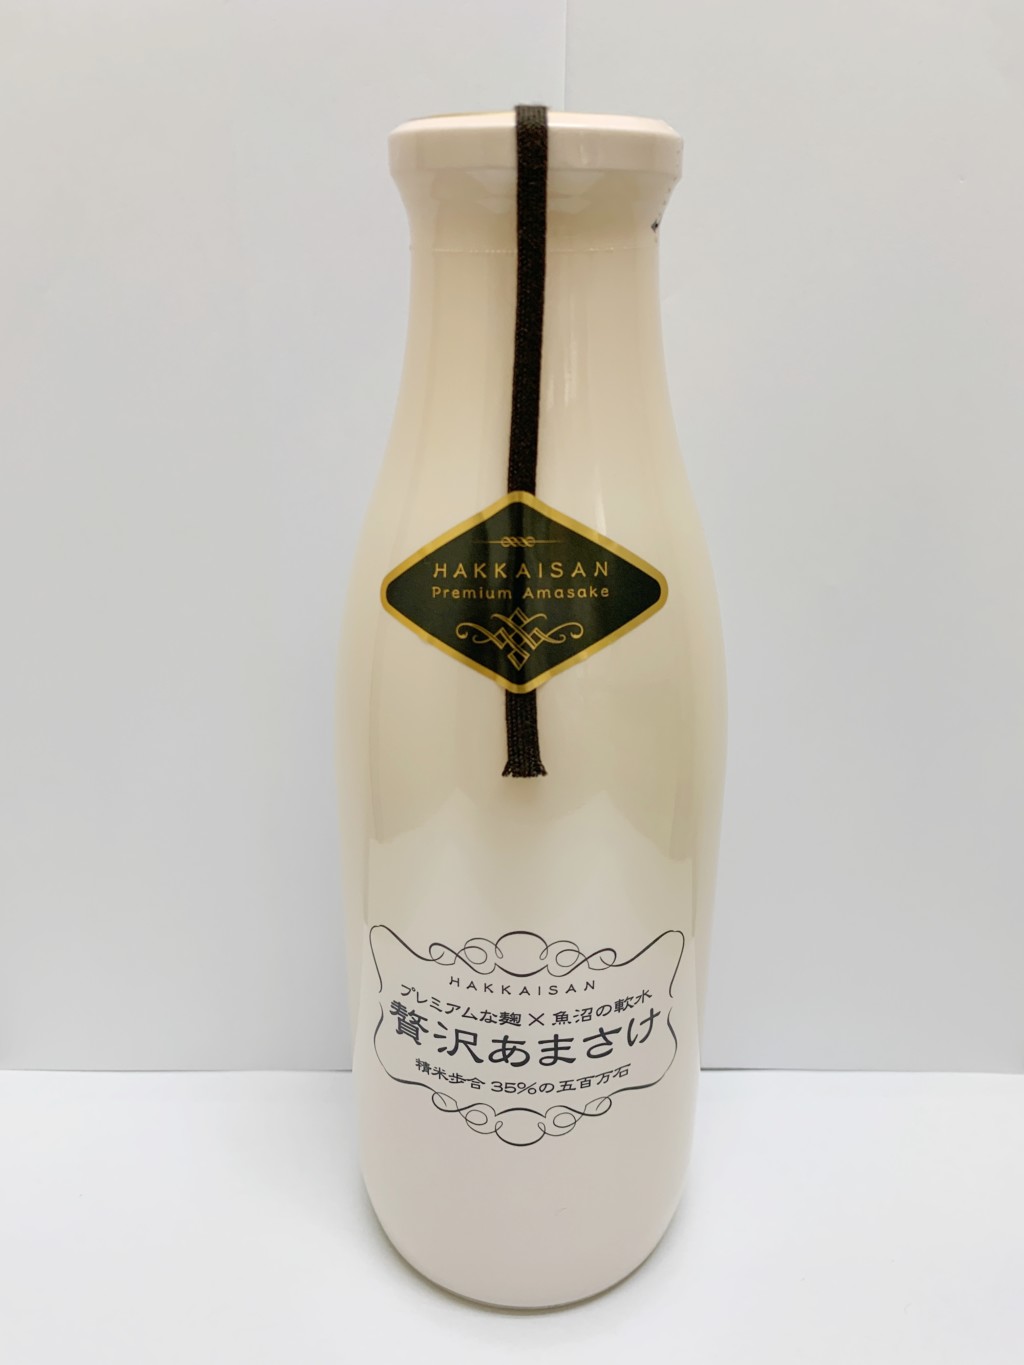 八海醸造の米麹甘酒『贅沢あまさけ』